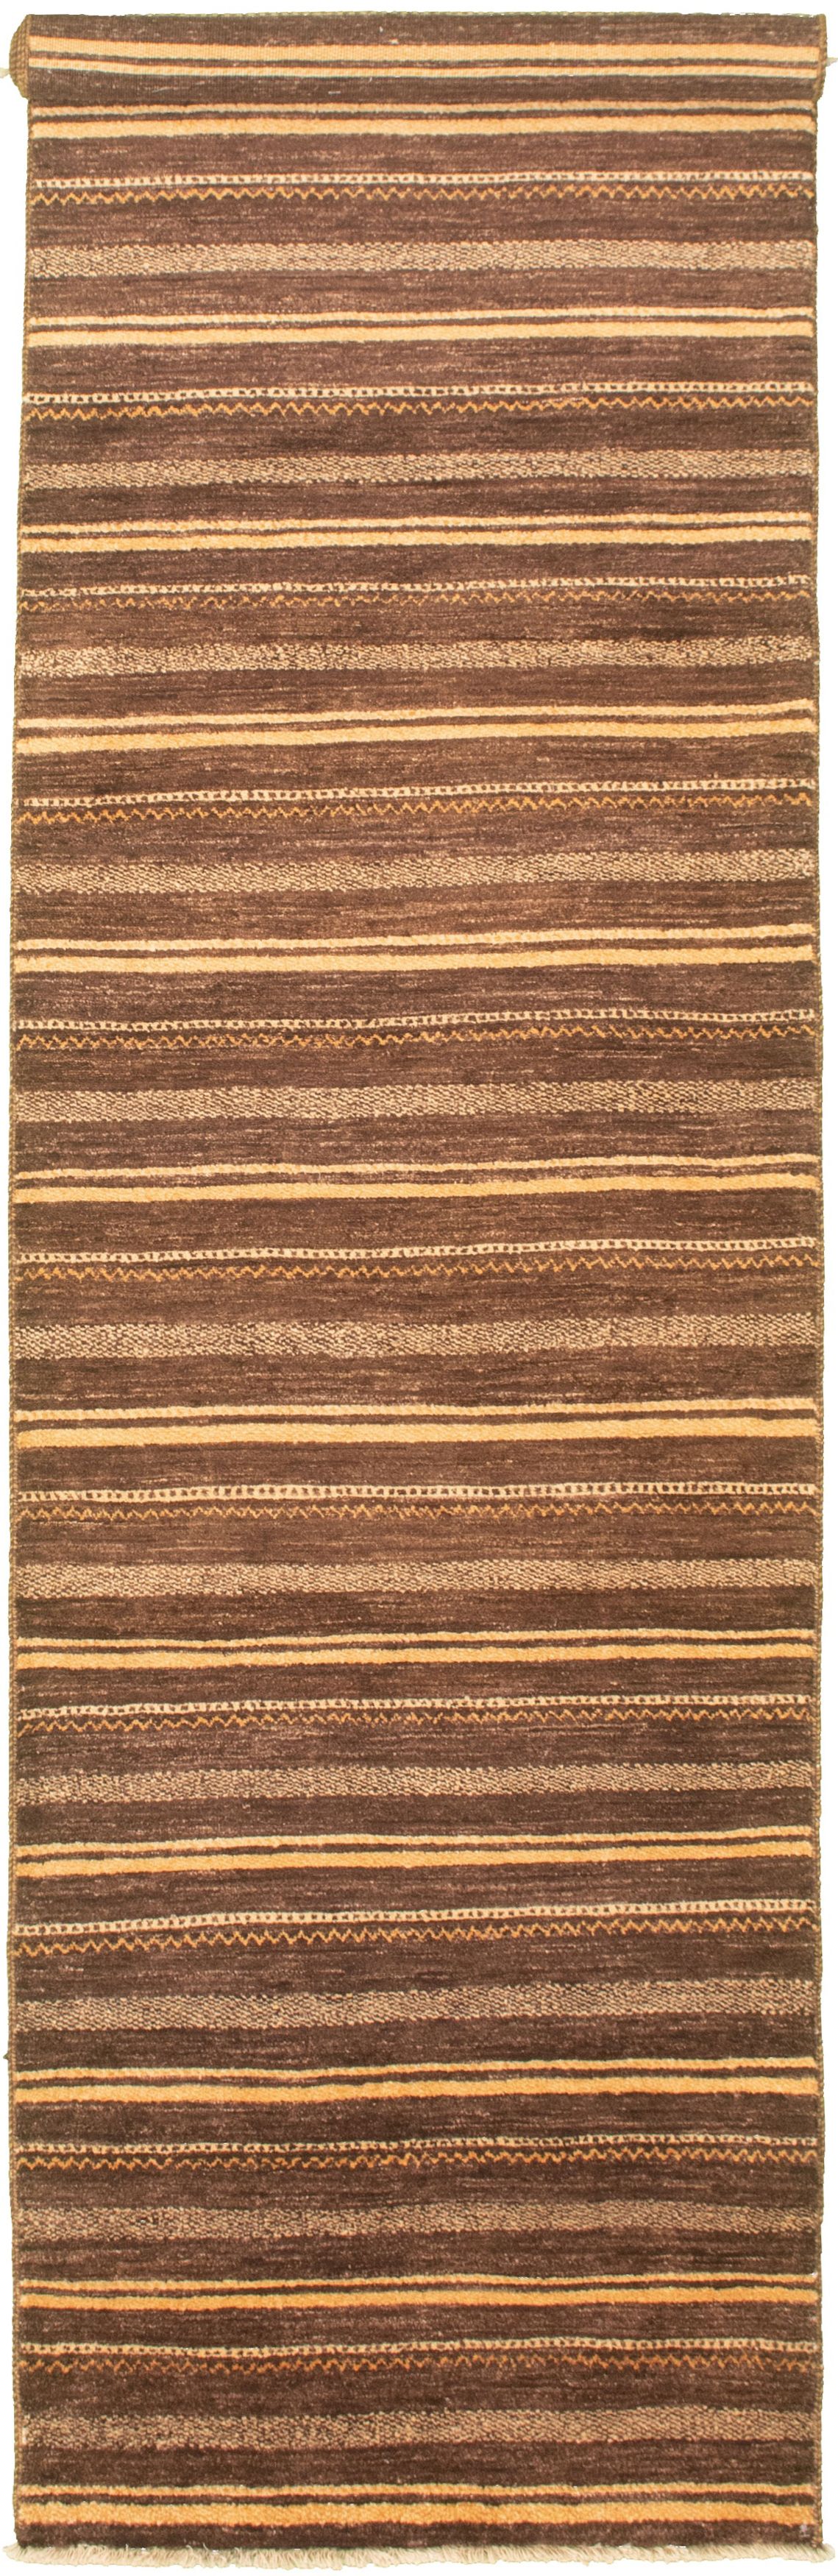 Hand-knotted Peshawar Ziegler Dark Brown Wool Rug 2'7" x 12'5" Size: 2'7" x 12'5"  